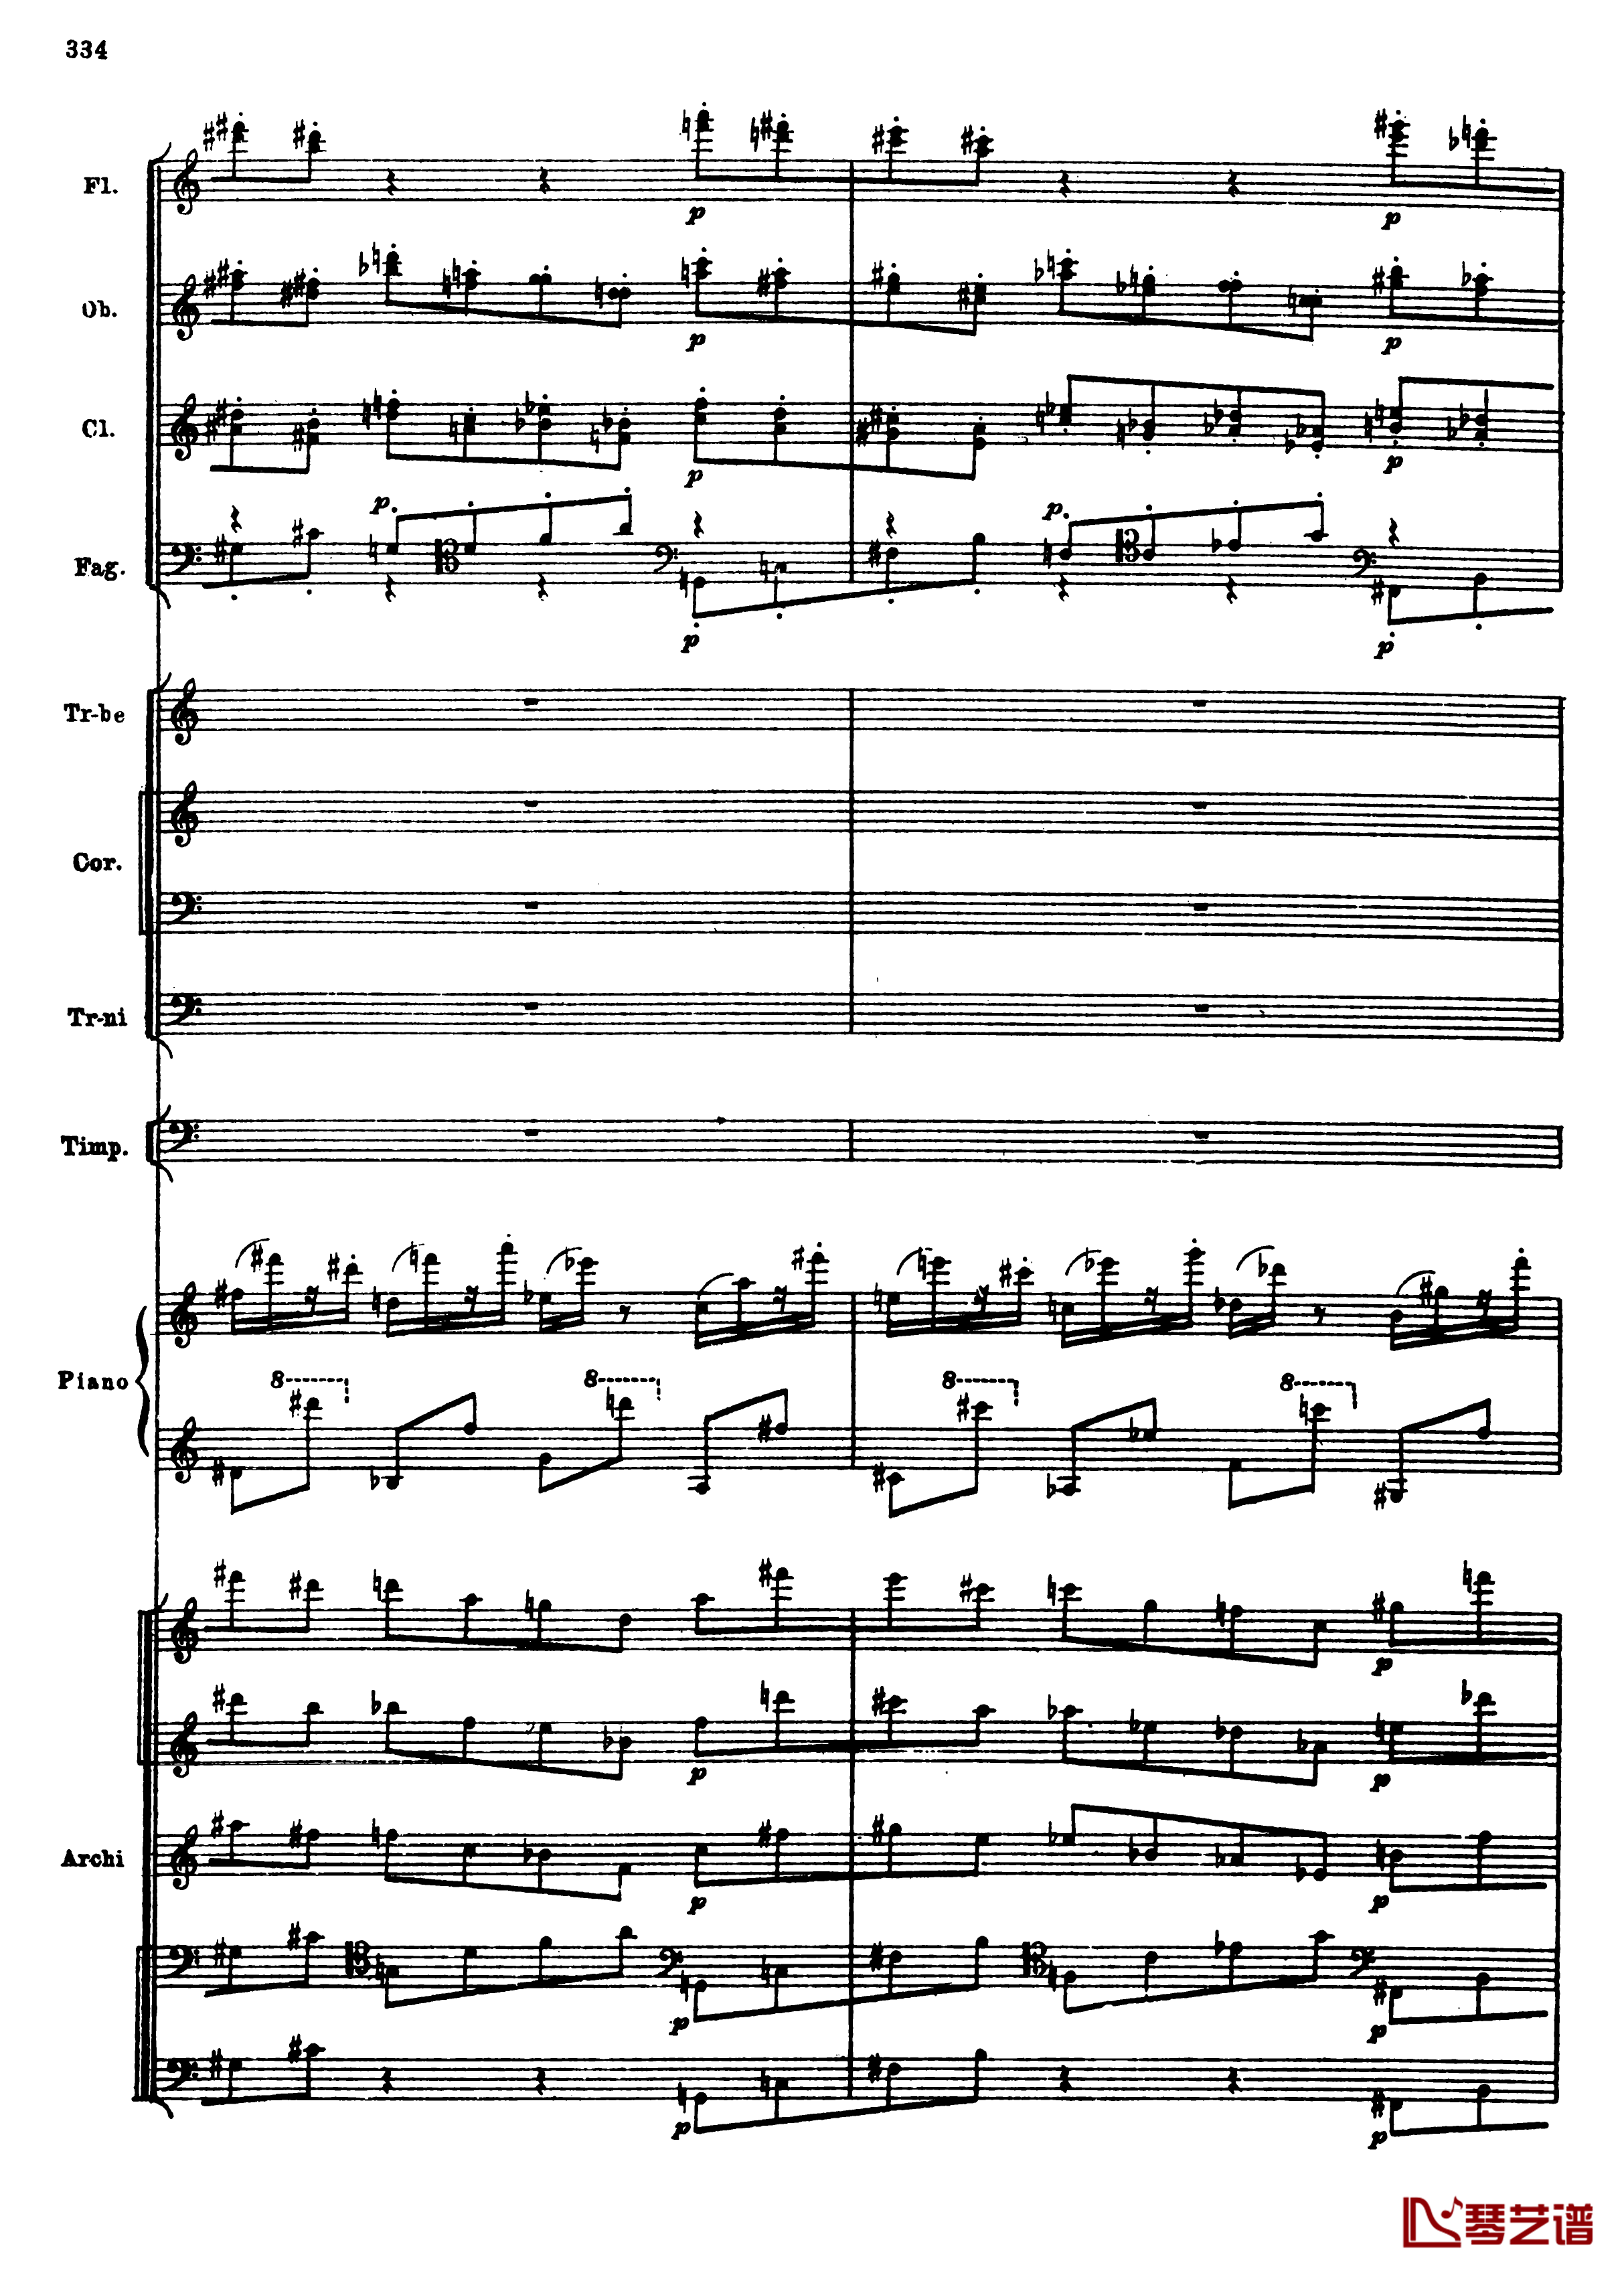 普罗科菲耶夫第三钢琴协奏曲钢琴谱-总谱-普罗科非耶夫66